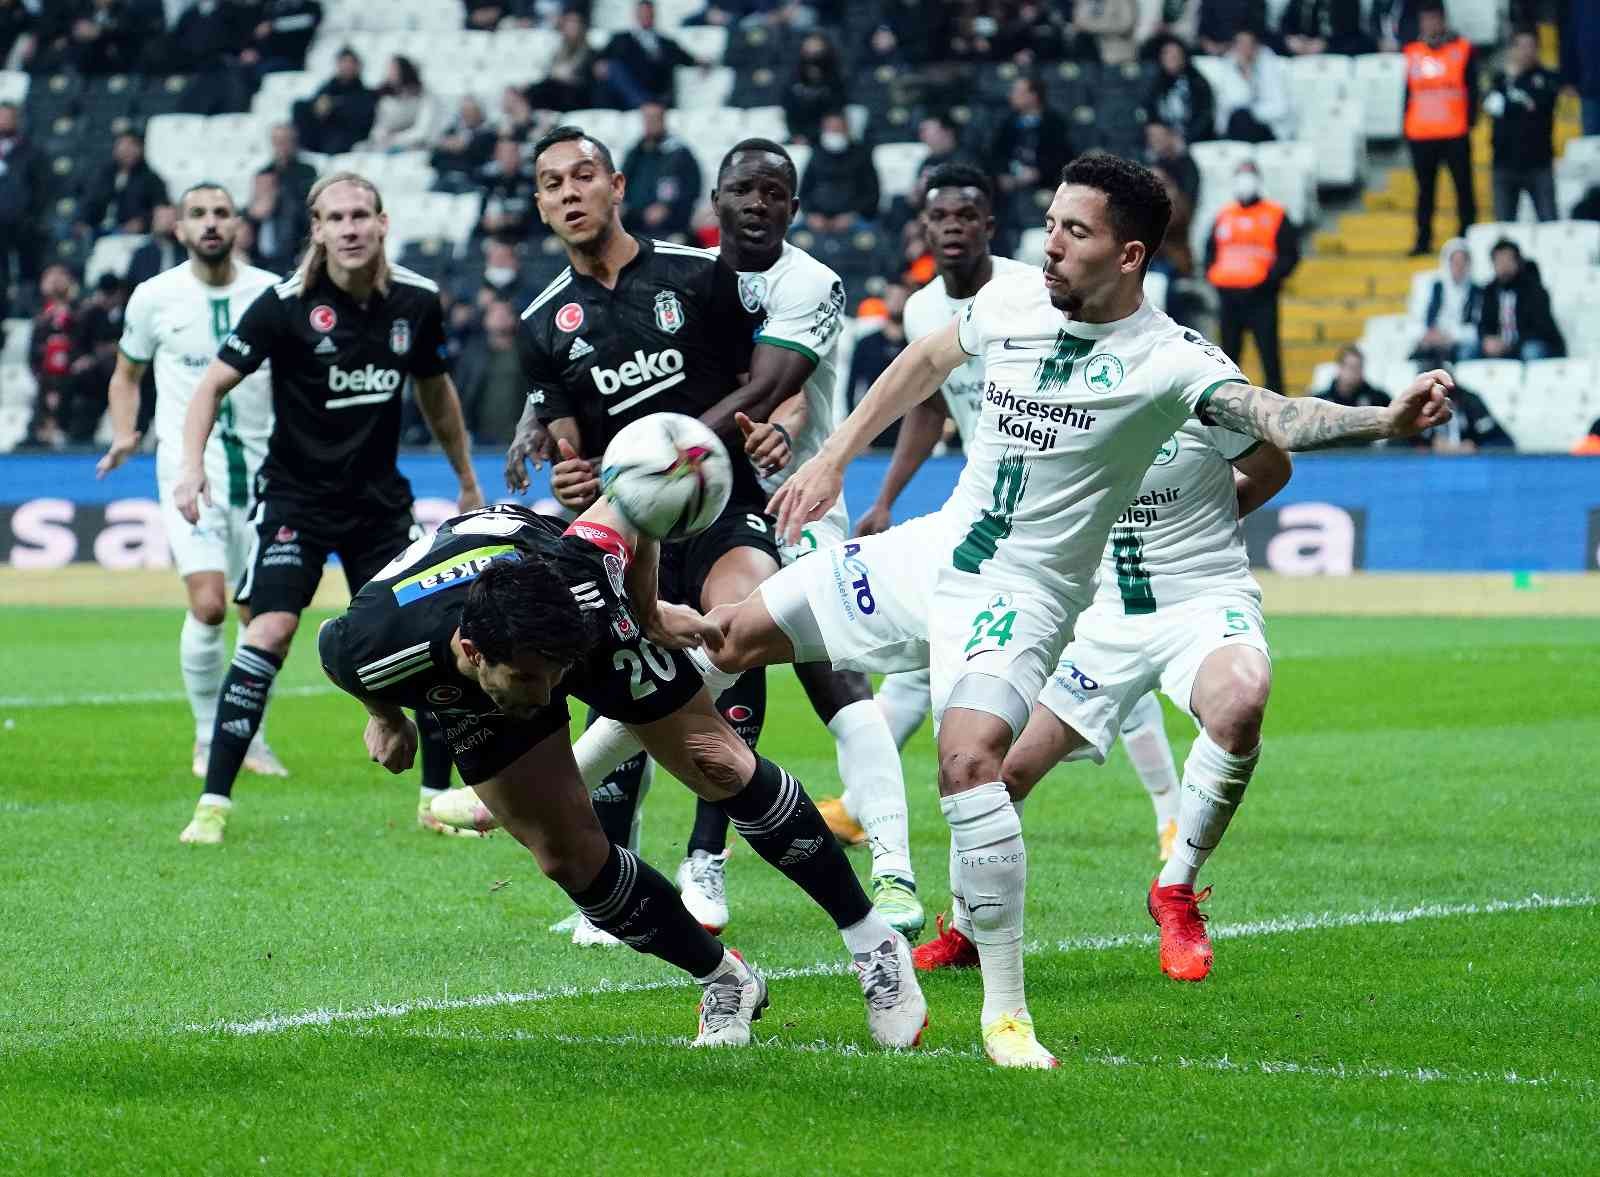 Spor Toto Süper Lig: Beşiktaş: 0 - GZT Giresunspor: 1 (İlk yarı) #istanbul